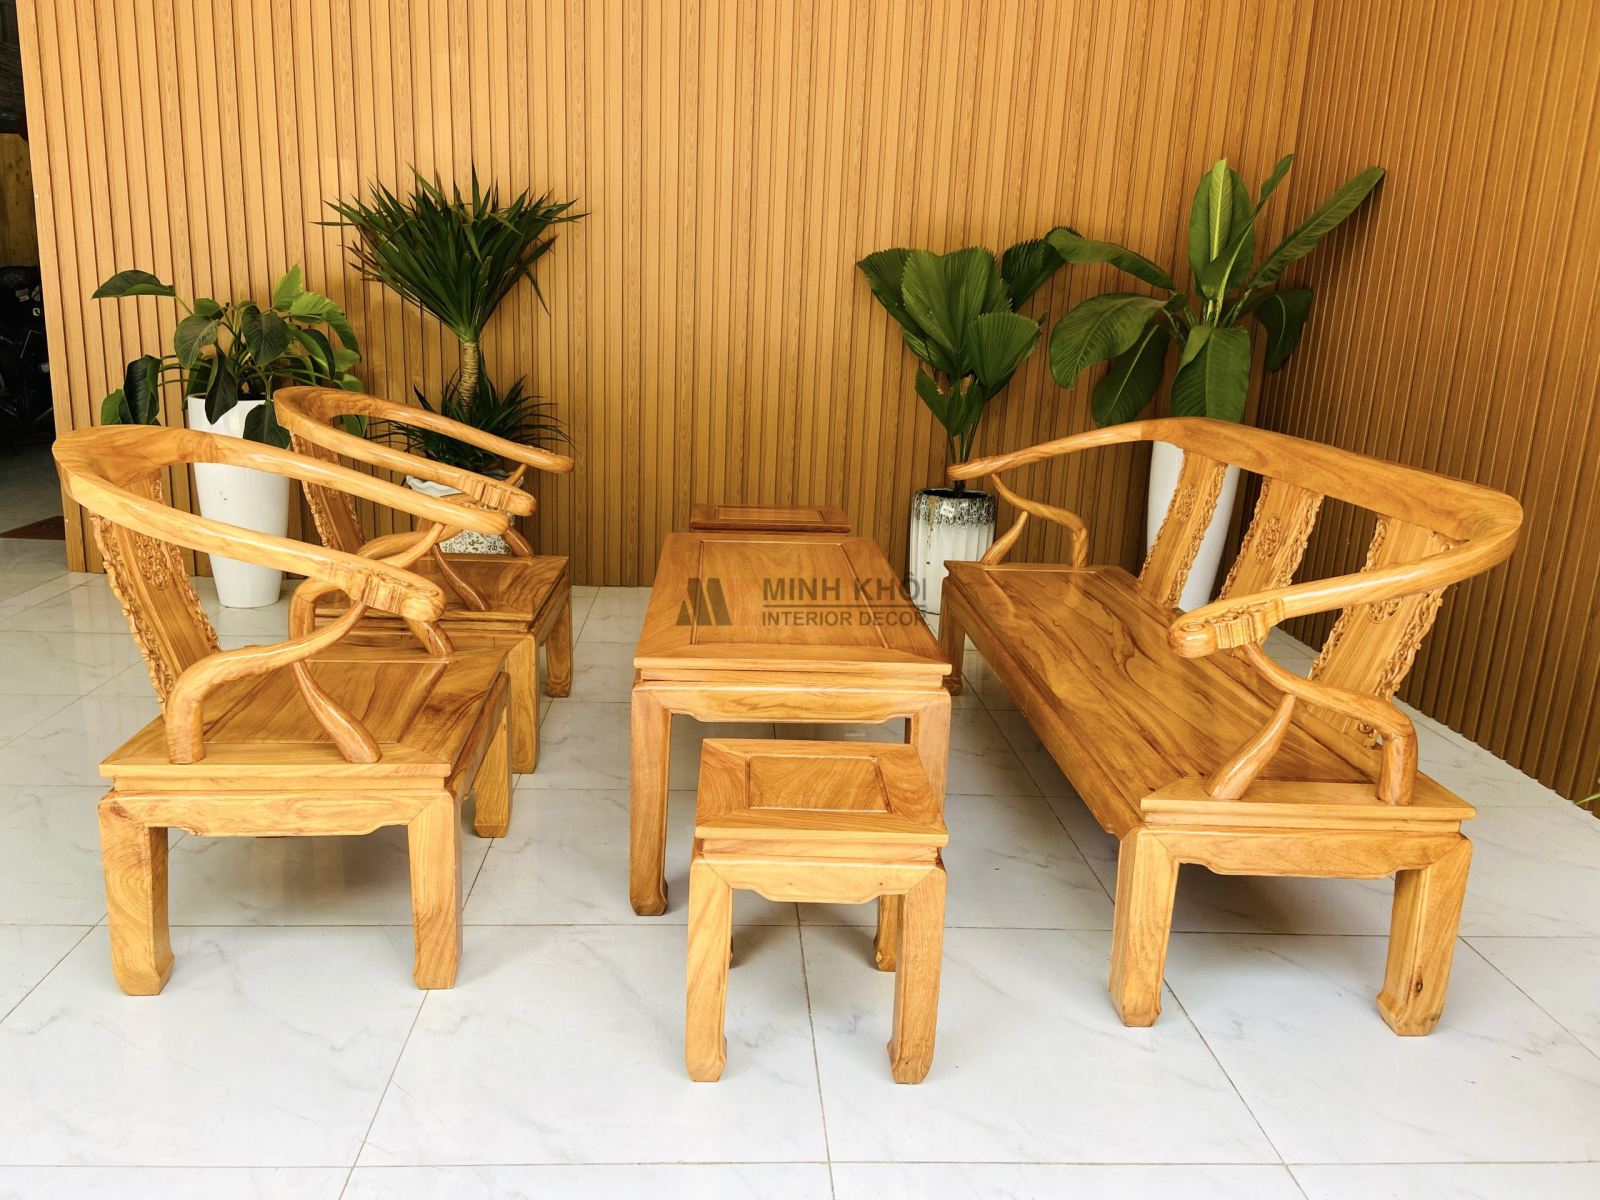 Bàn ghế gỗ sang trọng: Bàn ghế gỗ sang trọng là một chiếc đồ nội thất mang đến sự quý phái và lịch lãm cho căn phòng của bạn. Với mẫu mã đa dạng và chất lượng cao, chiếc bàn ghế này sẽ làm cho không gian của bạn trở nên đẳng cấp và sang trọng hơn bao giờ hết. Hãy đến với chúng tôi và trải nghiệm sự khác biệt mà chiếc bàn ghế gỗ sang trọng mang lại.